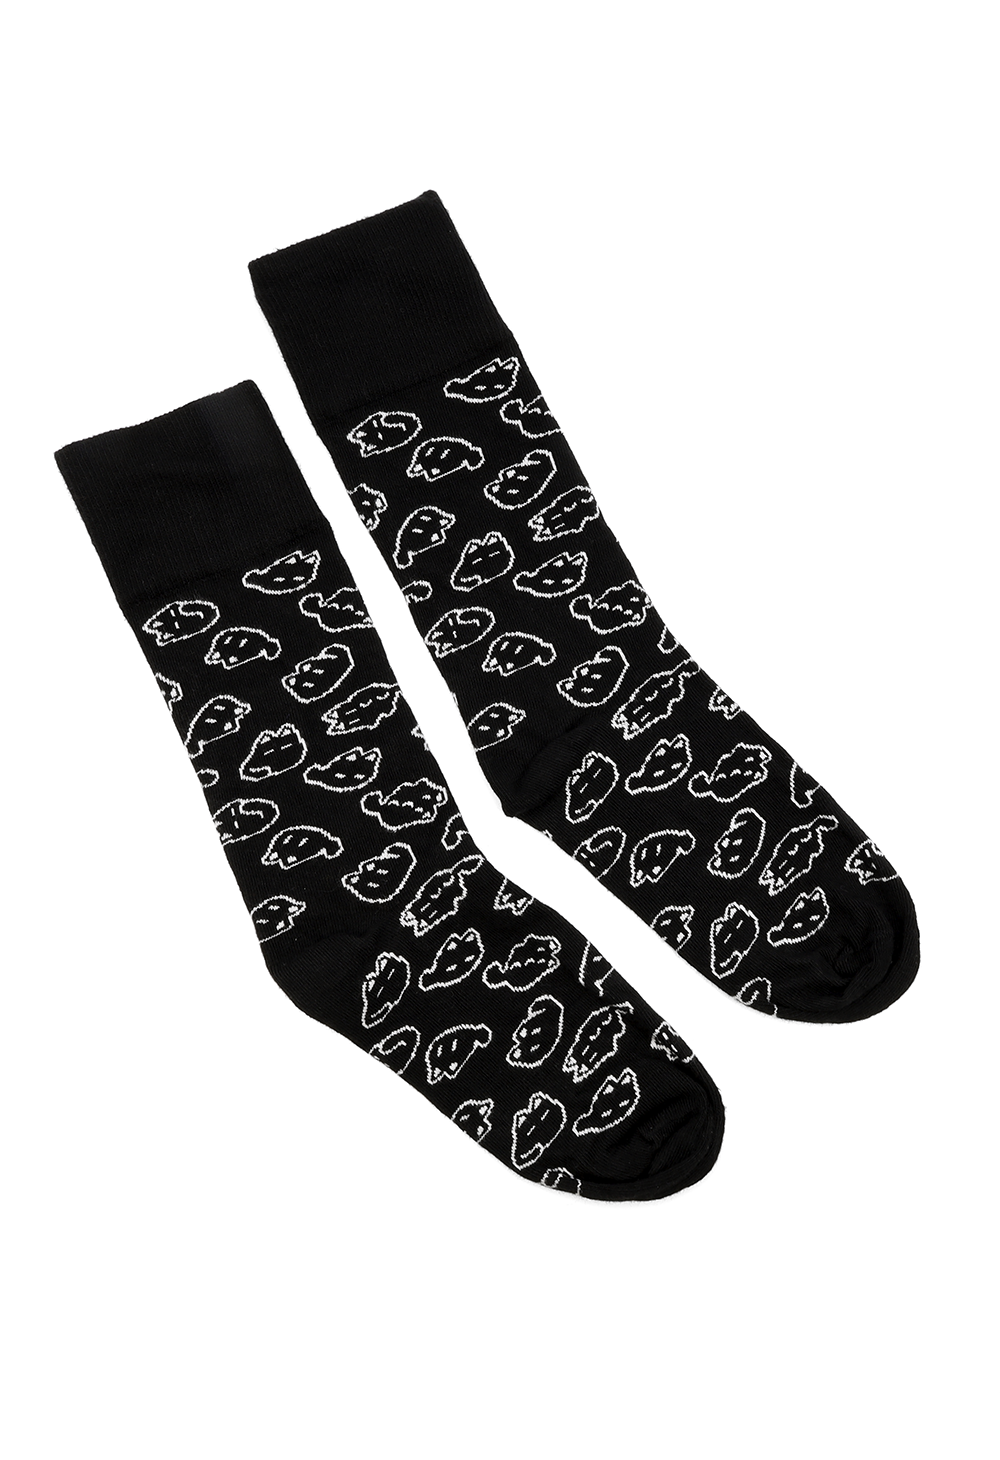 MEWO Socks